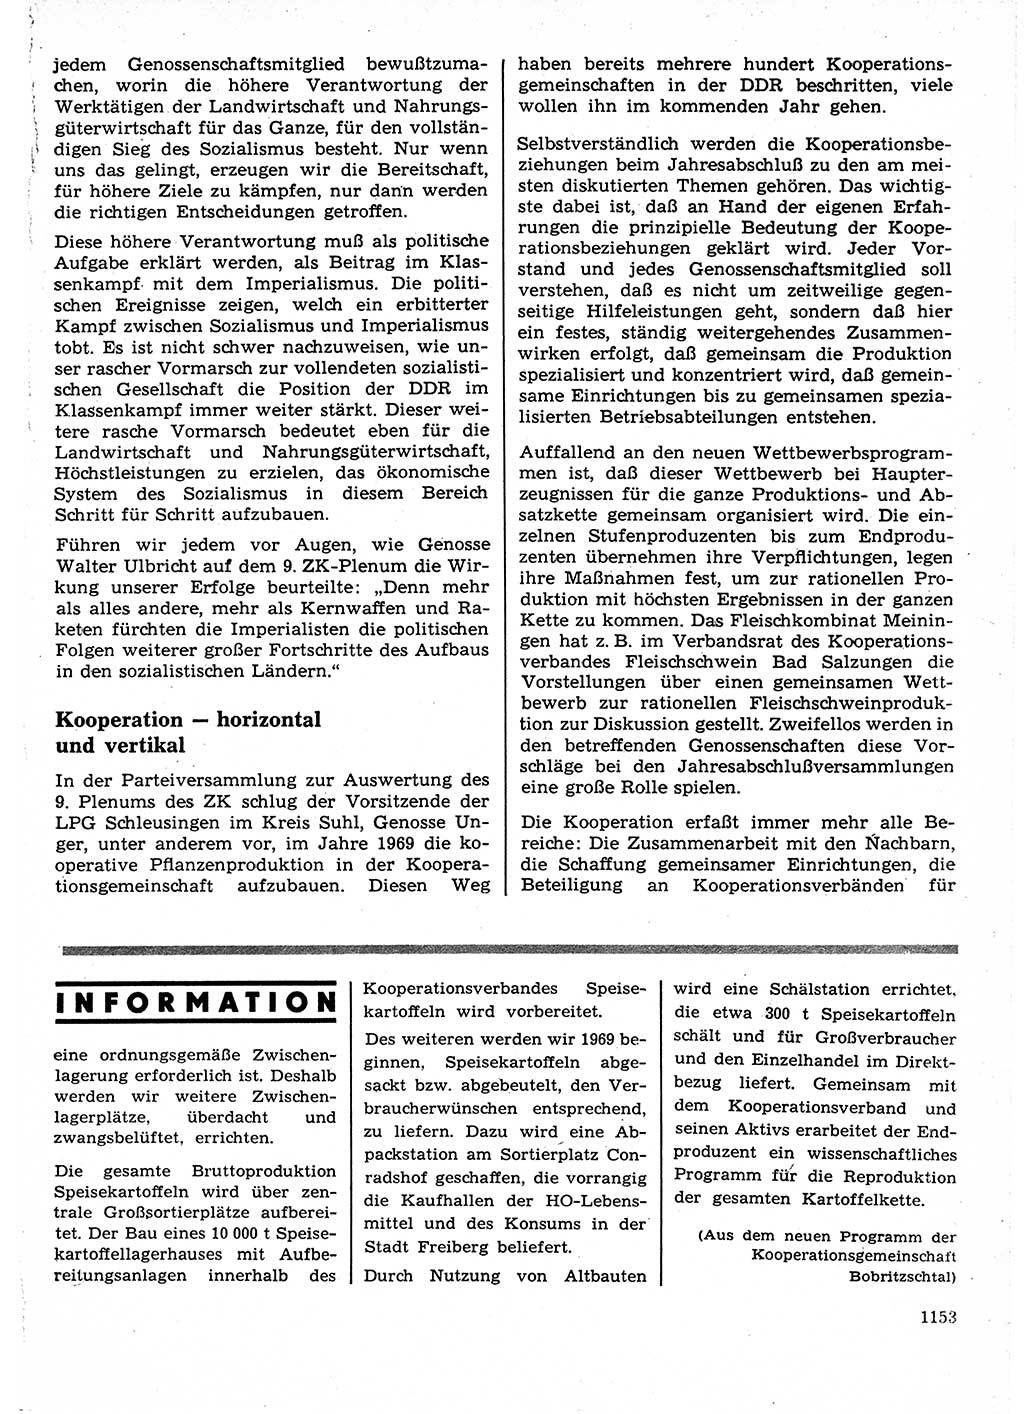 Neuer Weg (NW), Organ des Zentralkomitees (ZK) der SED (Sozialistische Einheitspartei Deutschlands) für Fragen des Parteilebens, 23. Jahrgang [Deutsche Demokratische Republik (DDR)] 1968, Seite 1137 (NW ZK SED DDR 1968, S. 1137)